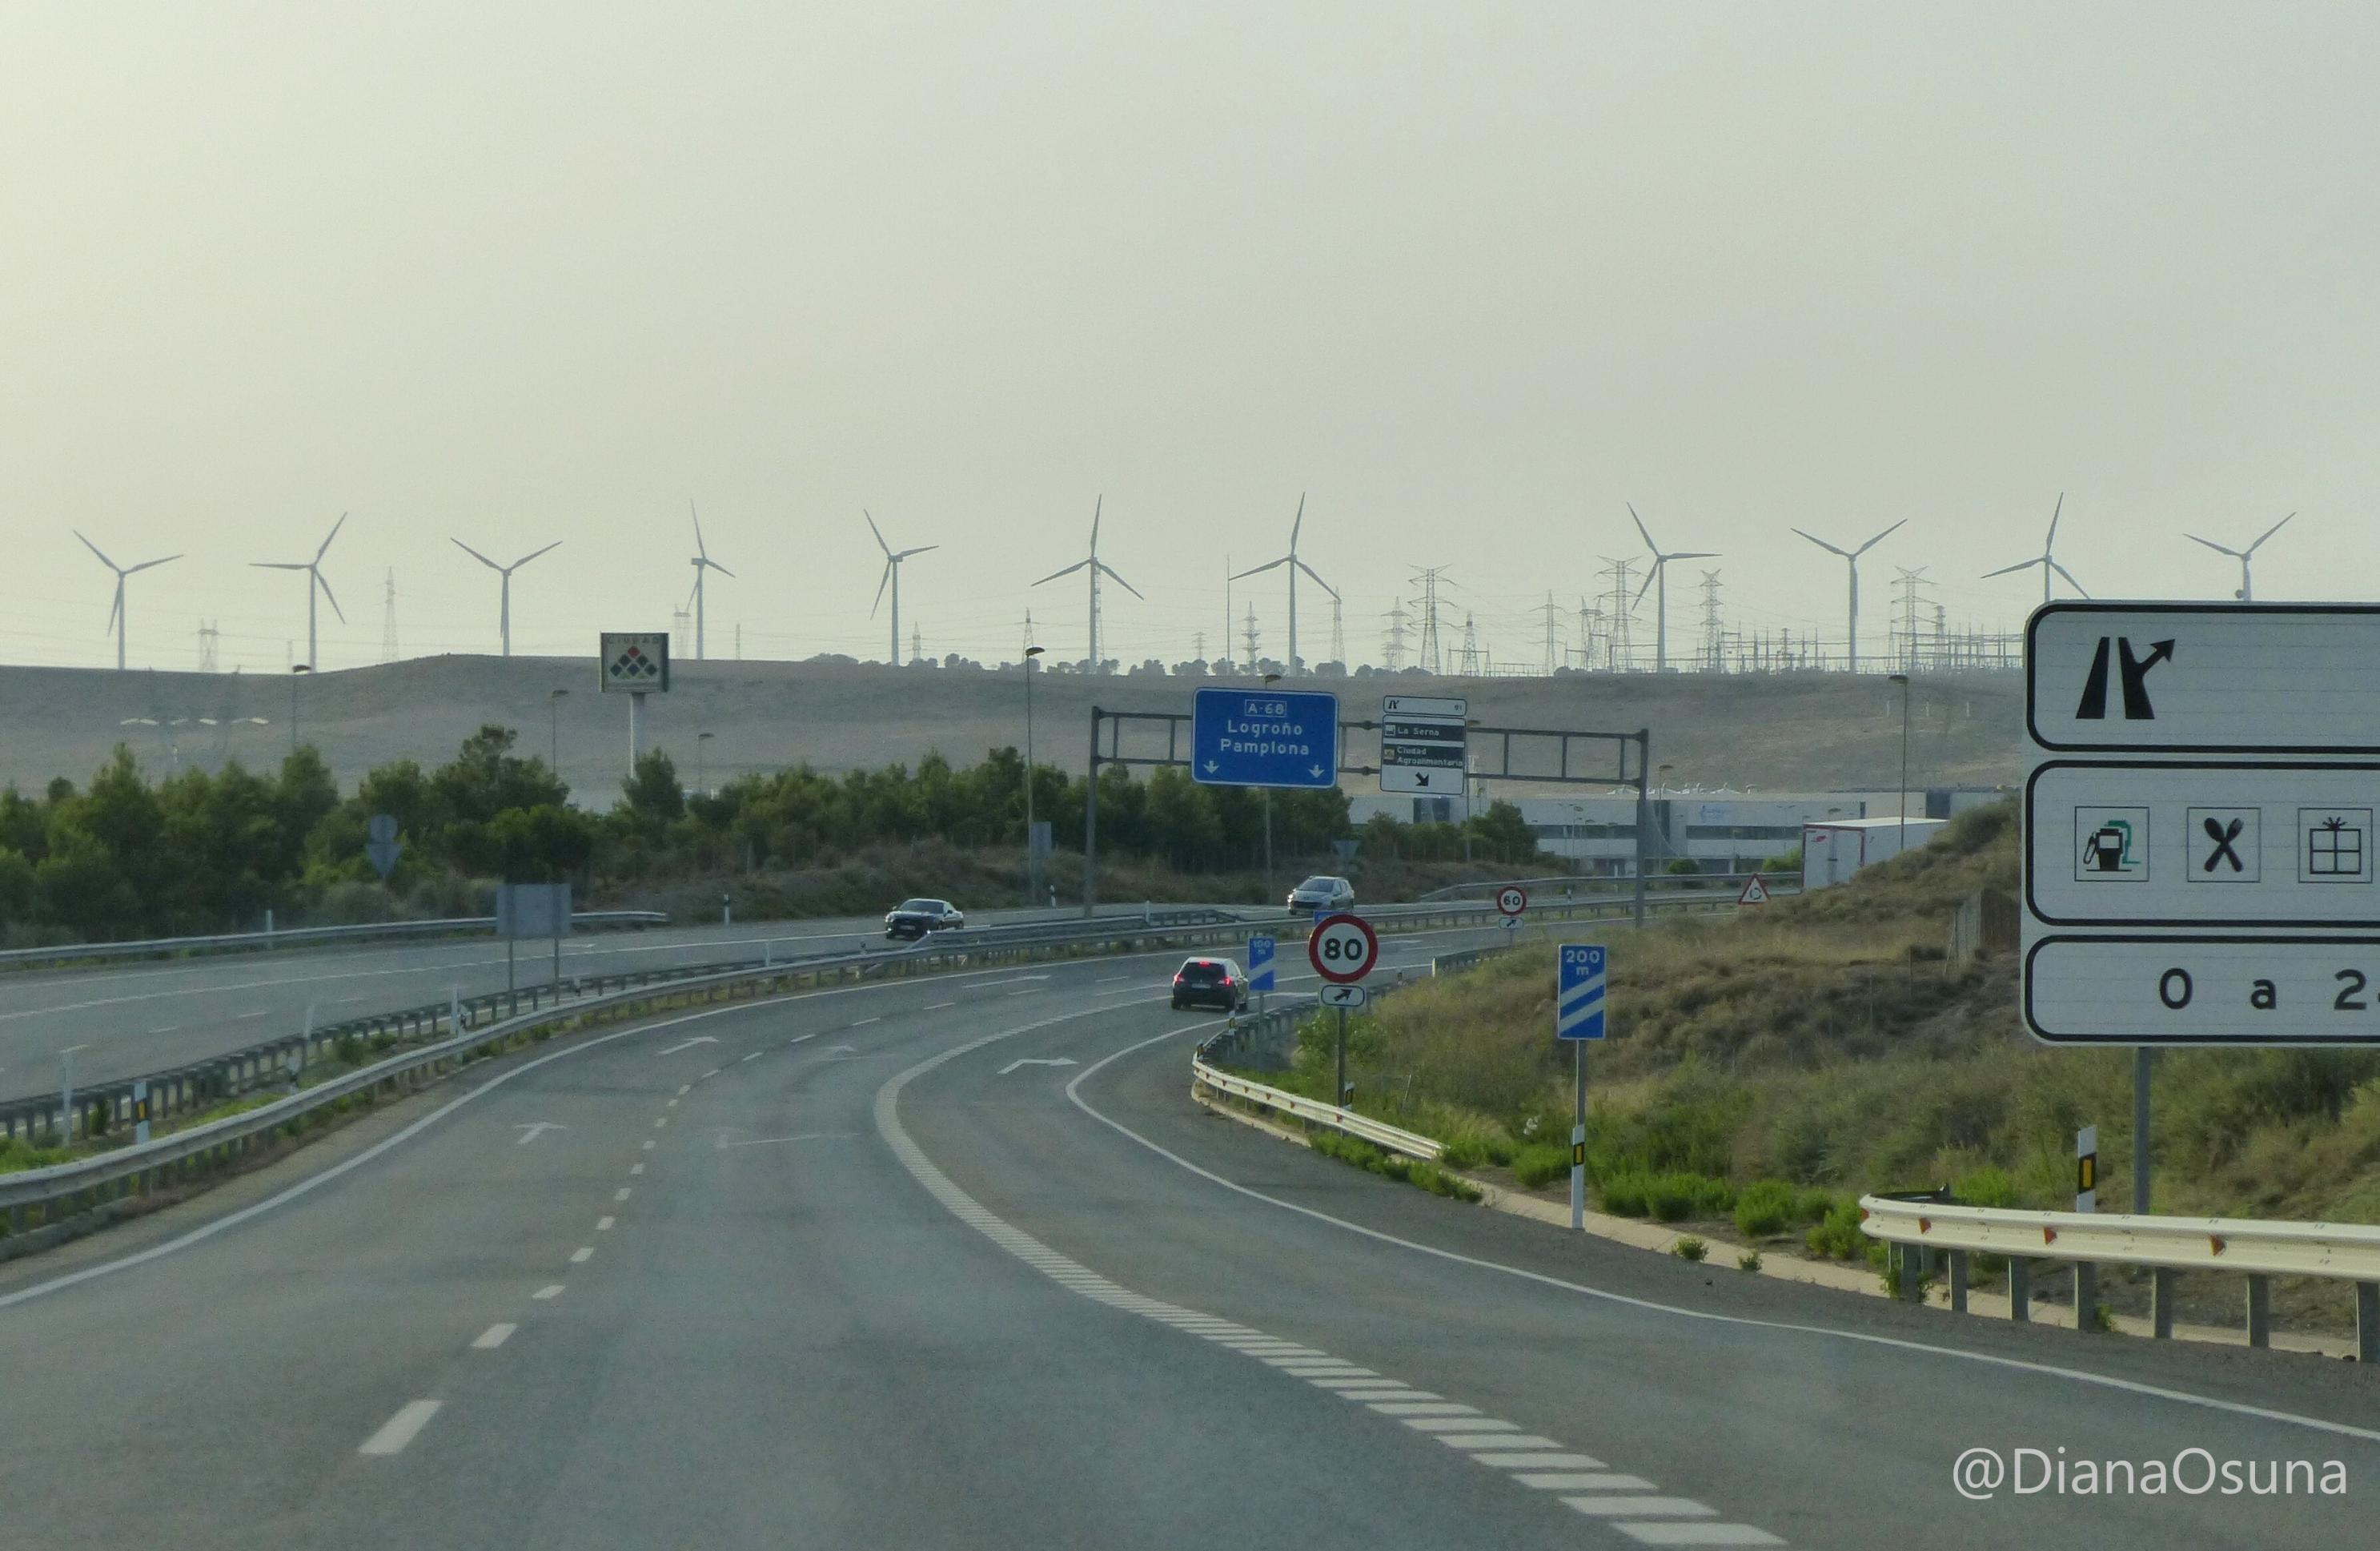 Am Horizont hinter einer Autobahnausfahrt steht eine lange Reihe von Windrädern und Strommasten